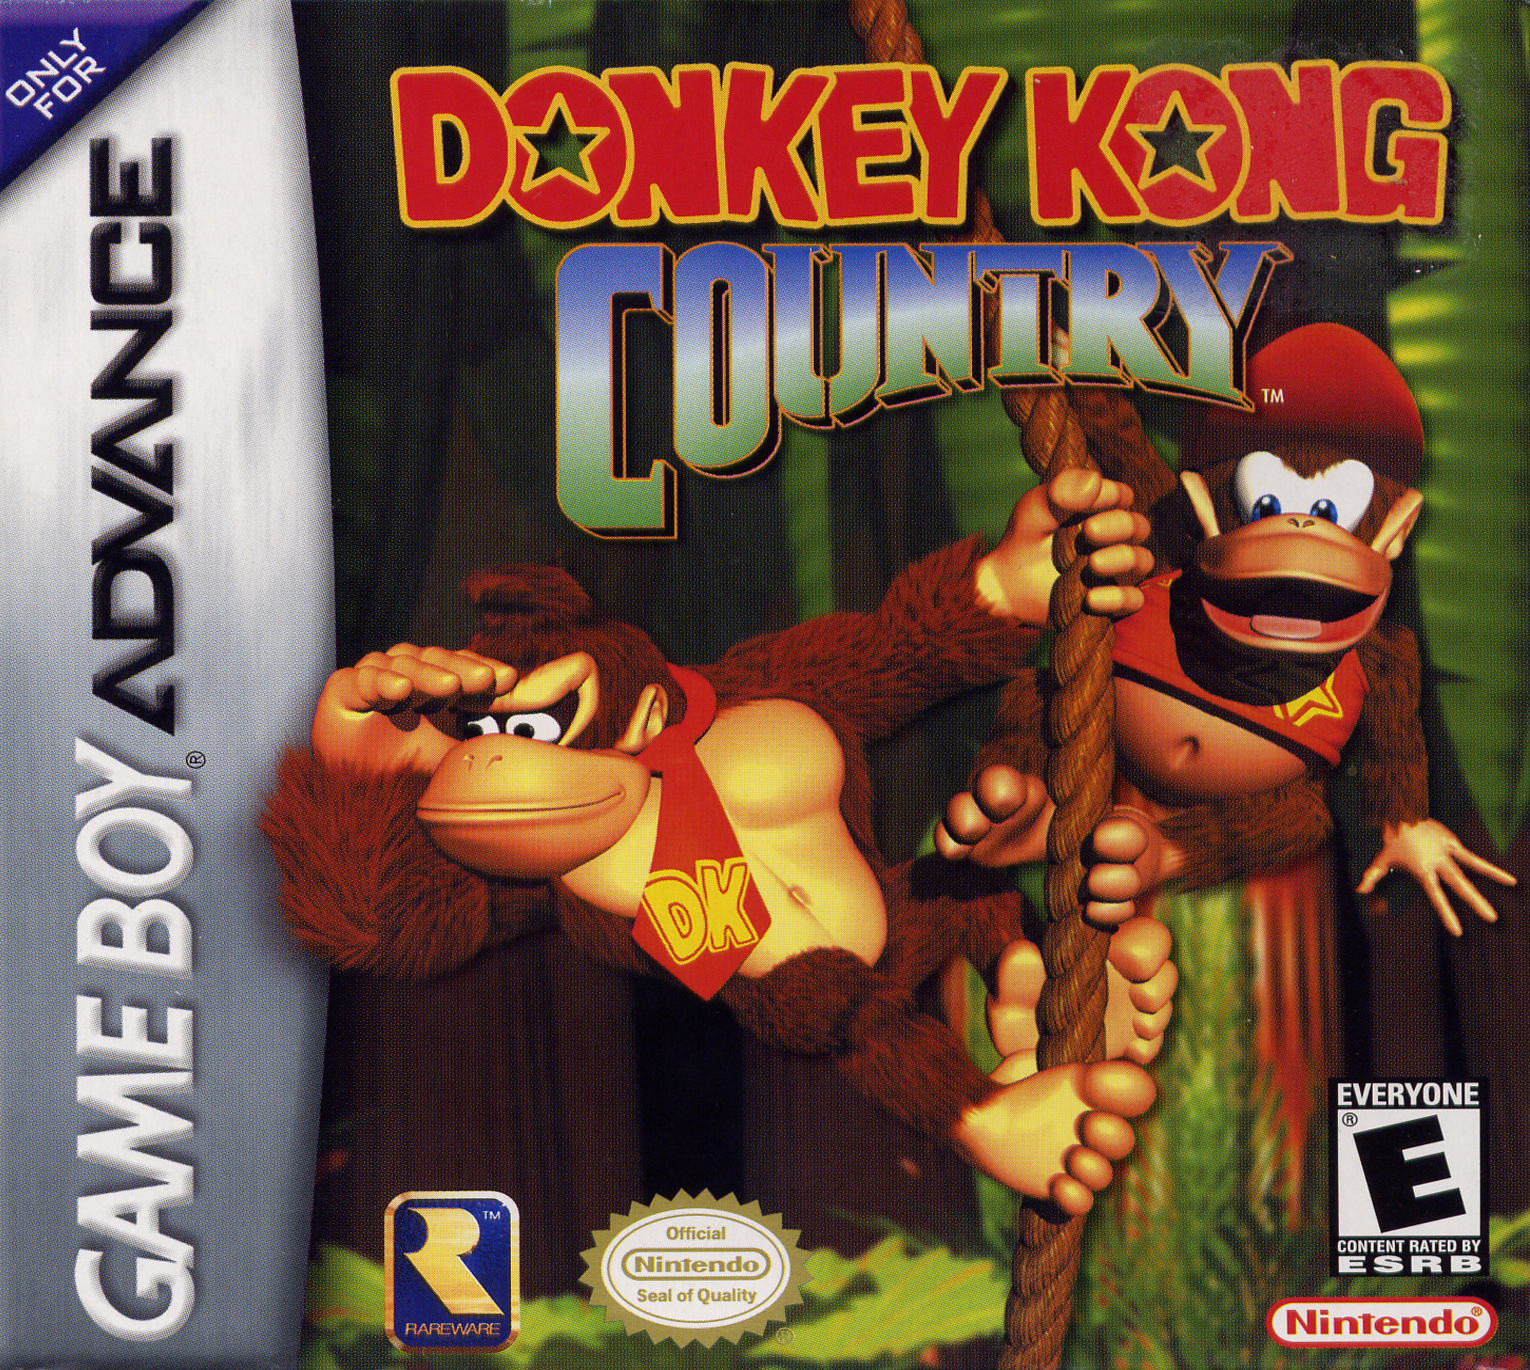 donkey kong country 2 box